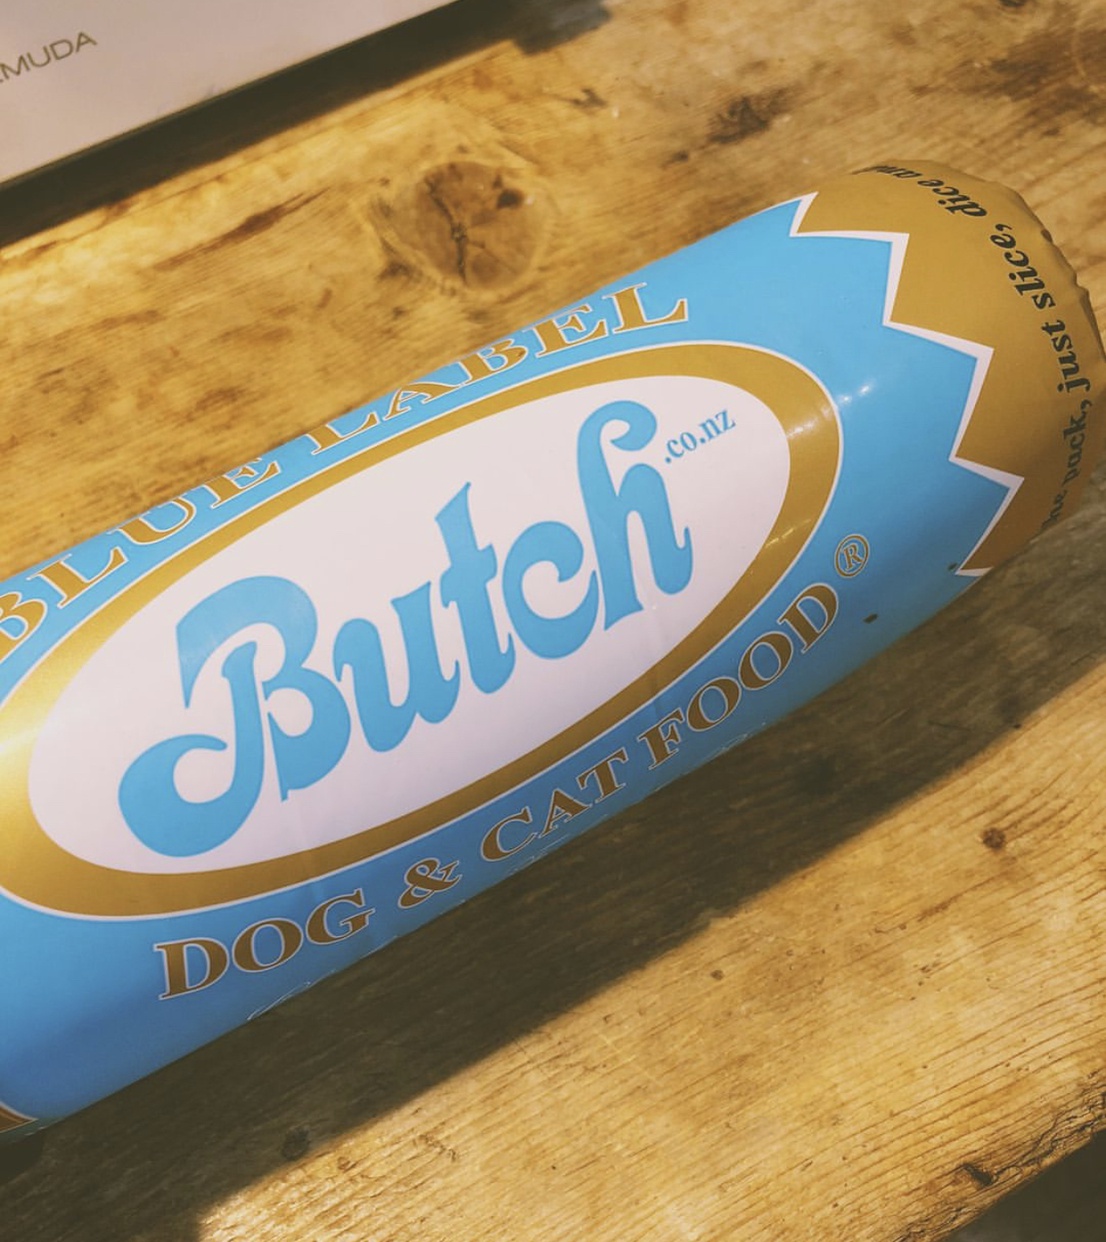 Butch(ブッチ) 犬用・特別トライアルセットの良い点・メリットに関するハリママさんの口コミ画像1